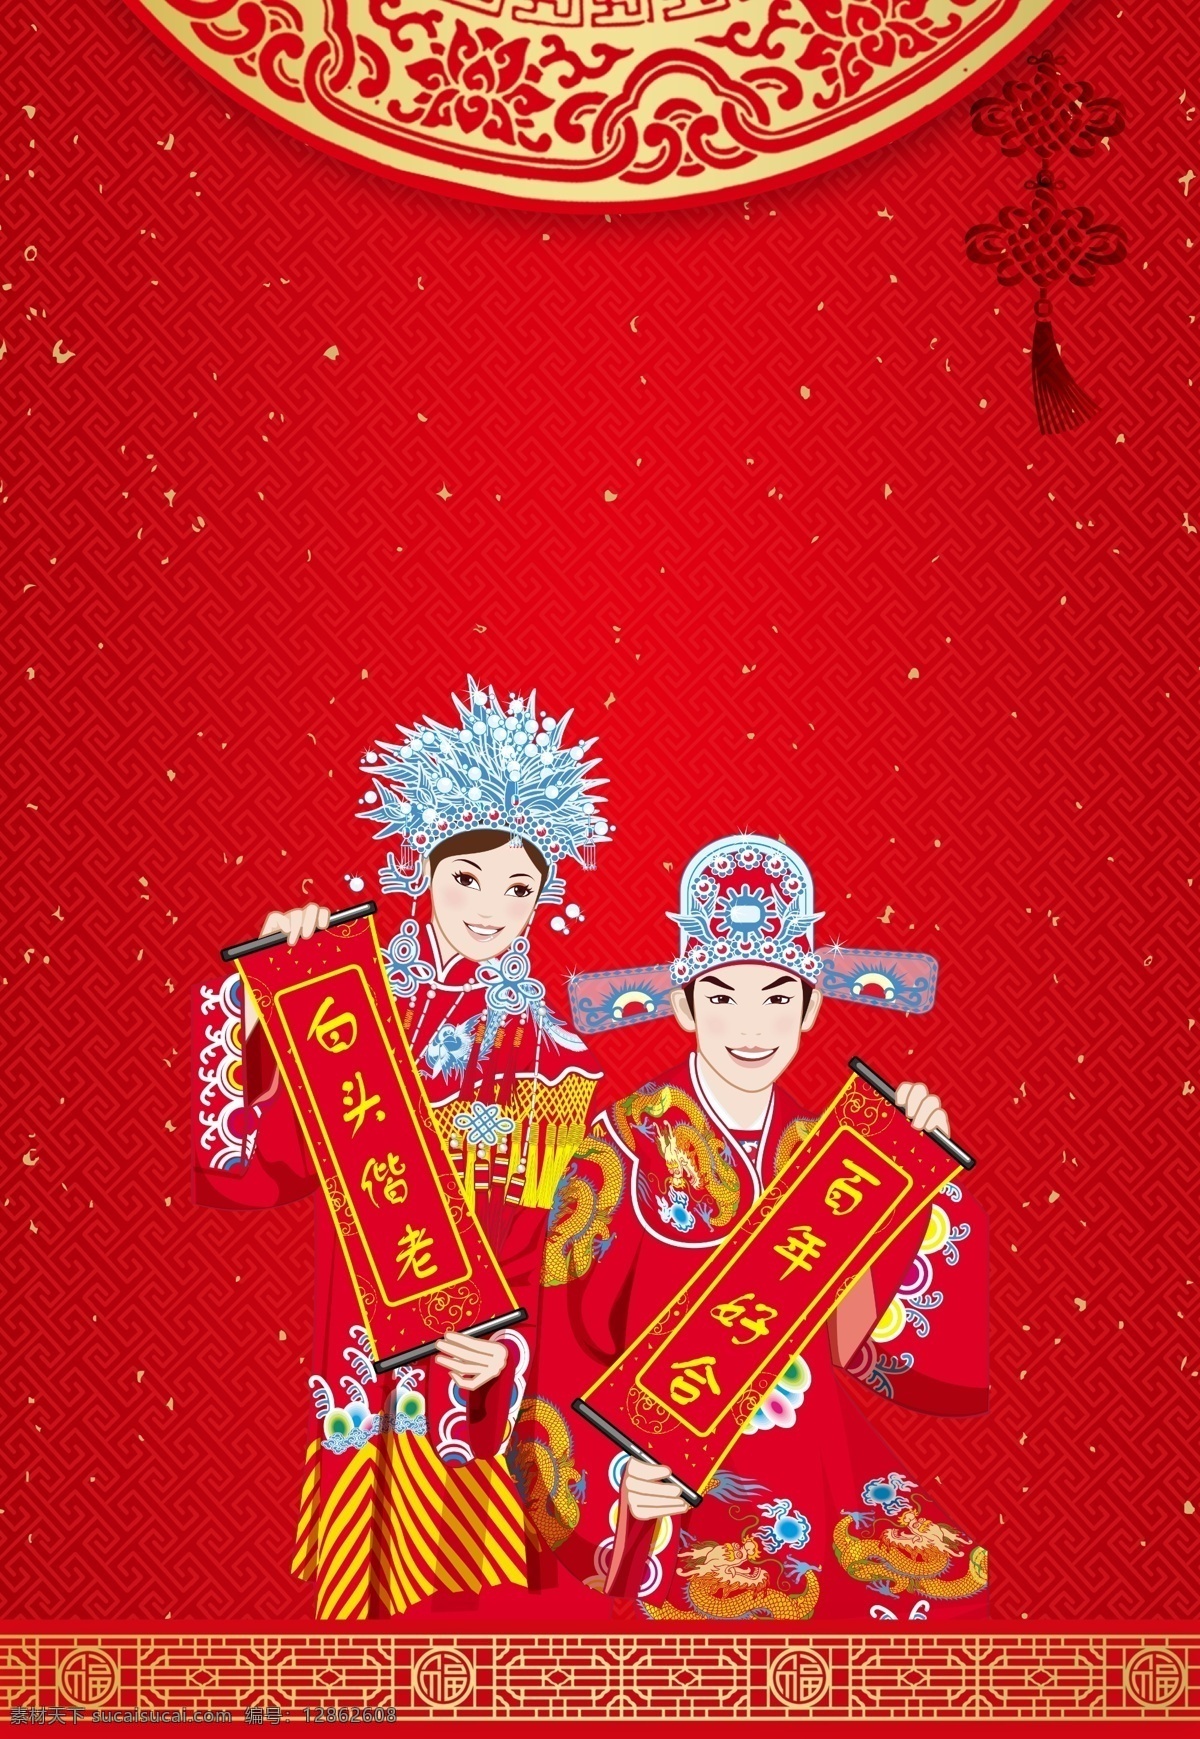 中国 风 古典 婚礼 背景 红色 中国结 婚纱照 婚礼素材 婚礼背景 古风背景 白头偕老 百年好合 新人 新娘 结婚背景